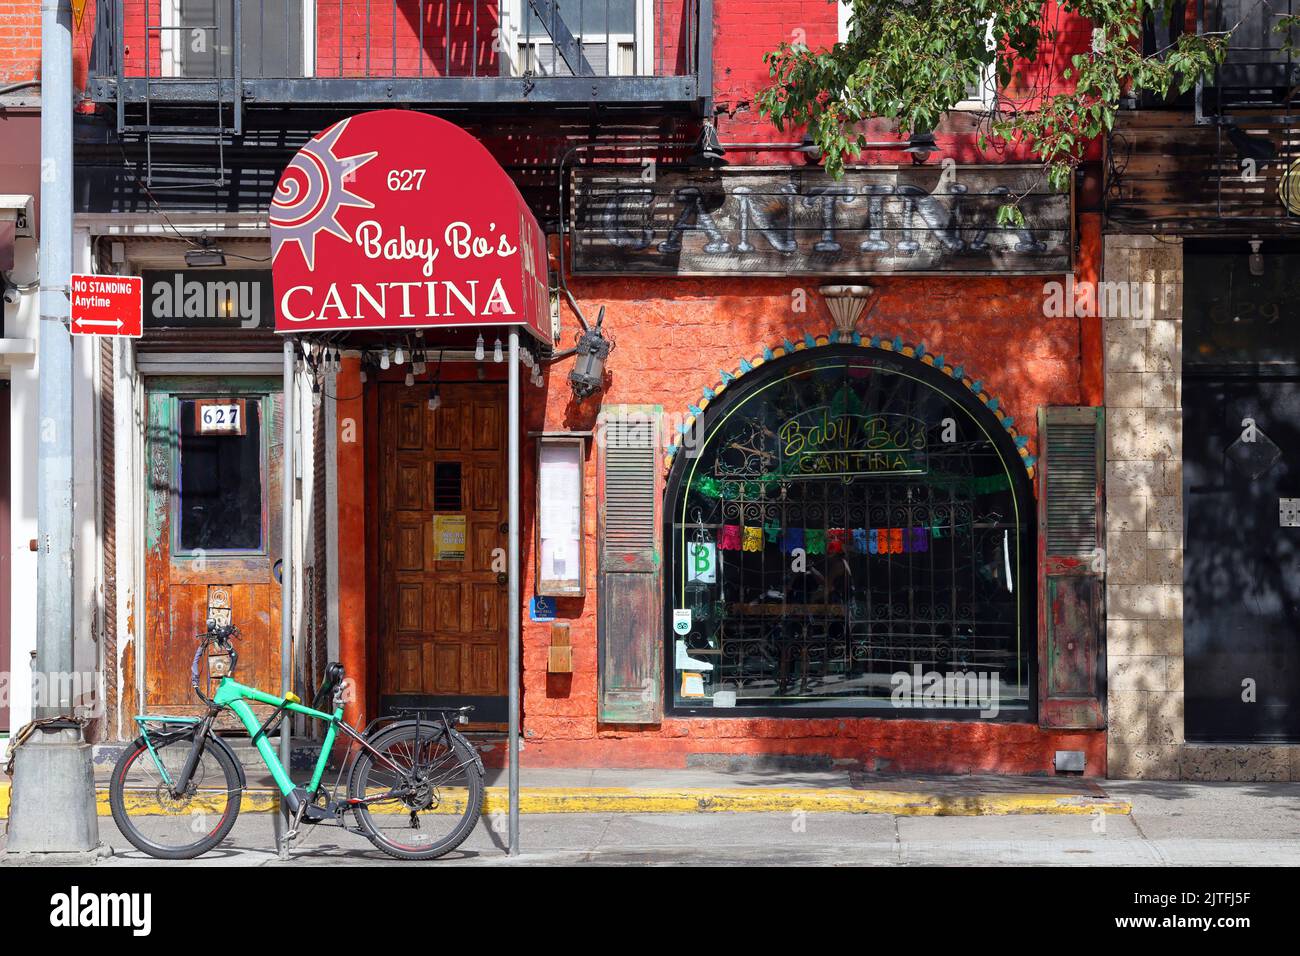 Baby Bo's Cantina, 627 2. Ave, New York, NYC Schaufensterfoto eines mexikanischen Restaurants im Murray Hill-Viertel in Manhattan. Stockfoto